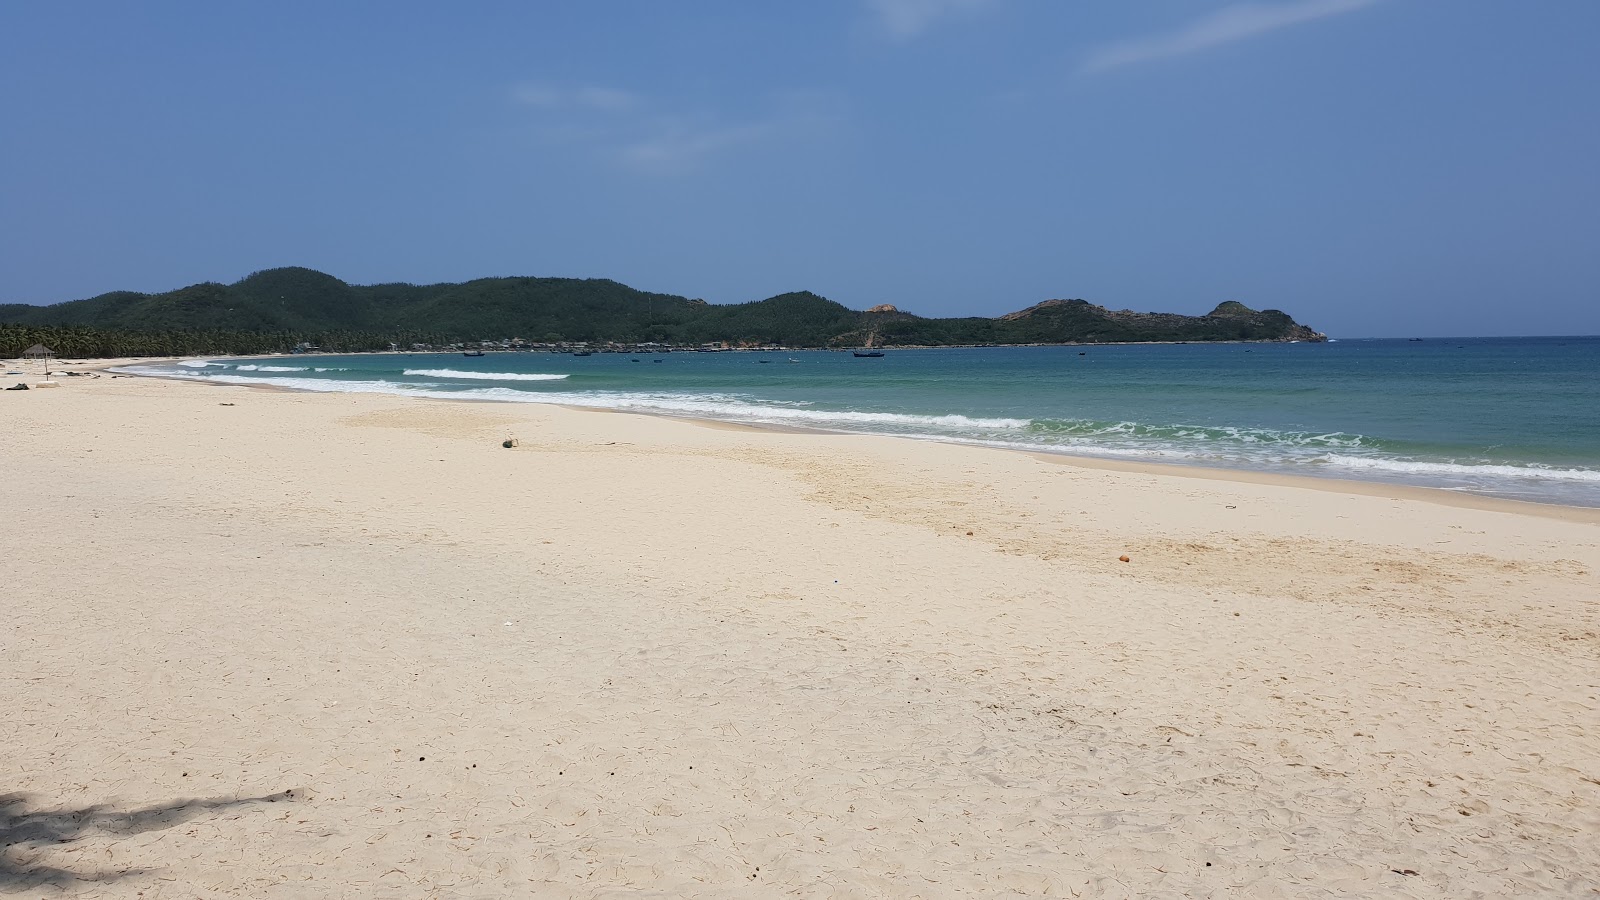 Bay Hoa Beach'in fotoğrafı parlak kum yüzey ile